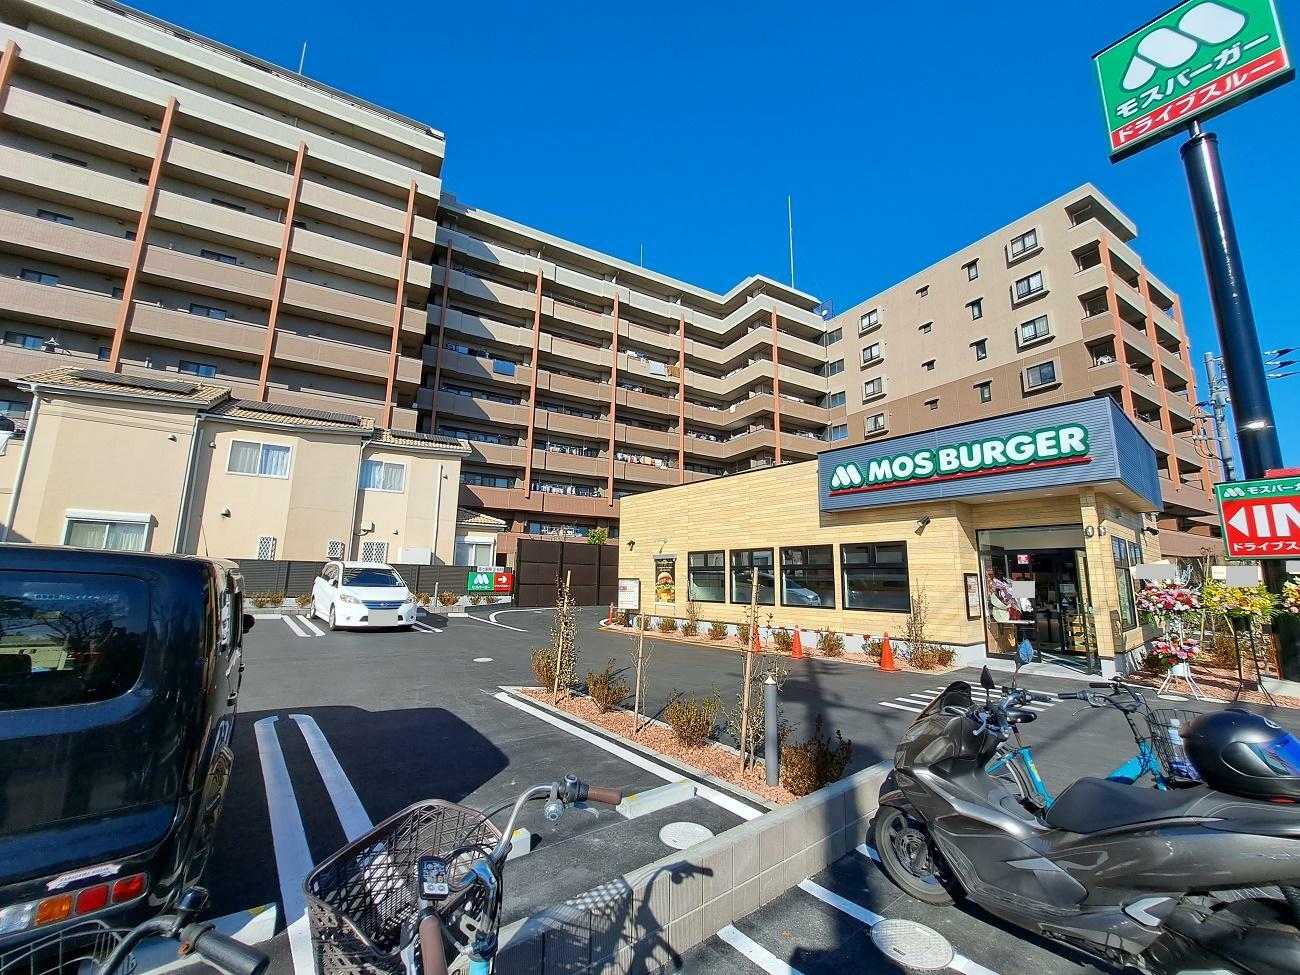 ドライブスルー店舗は市川市内で唯一。